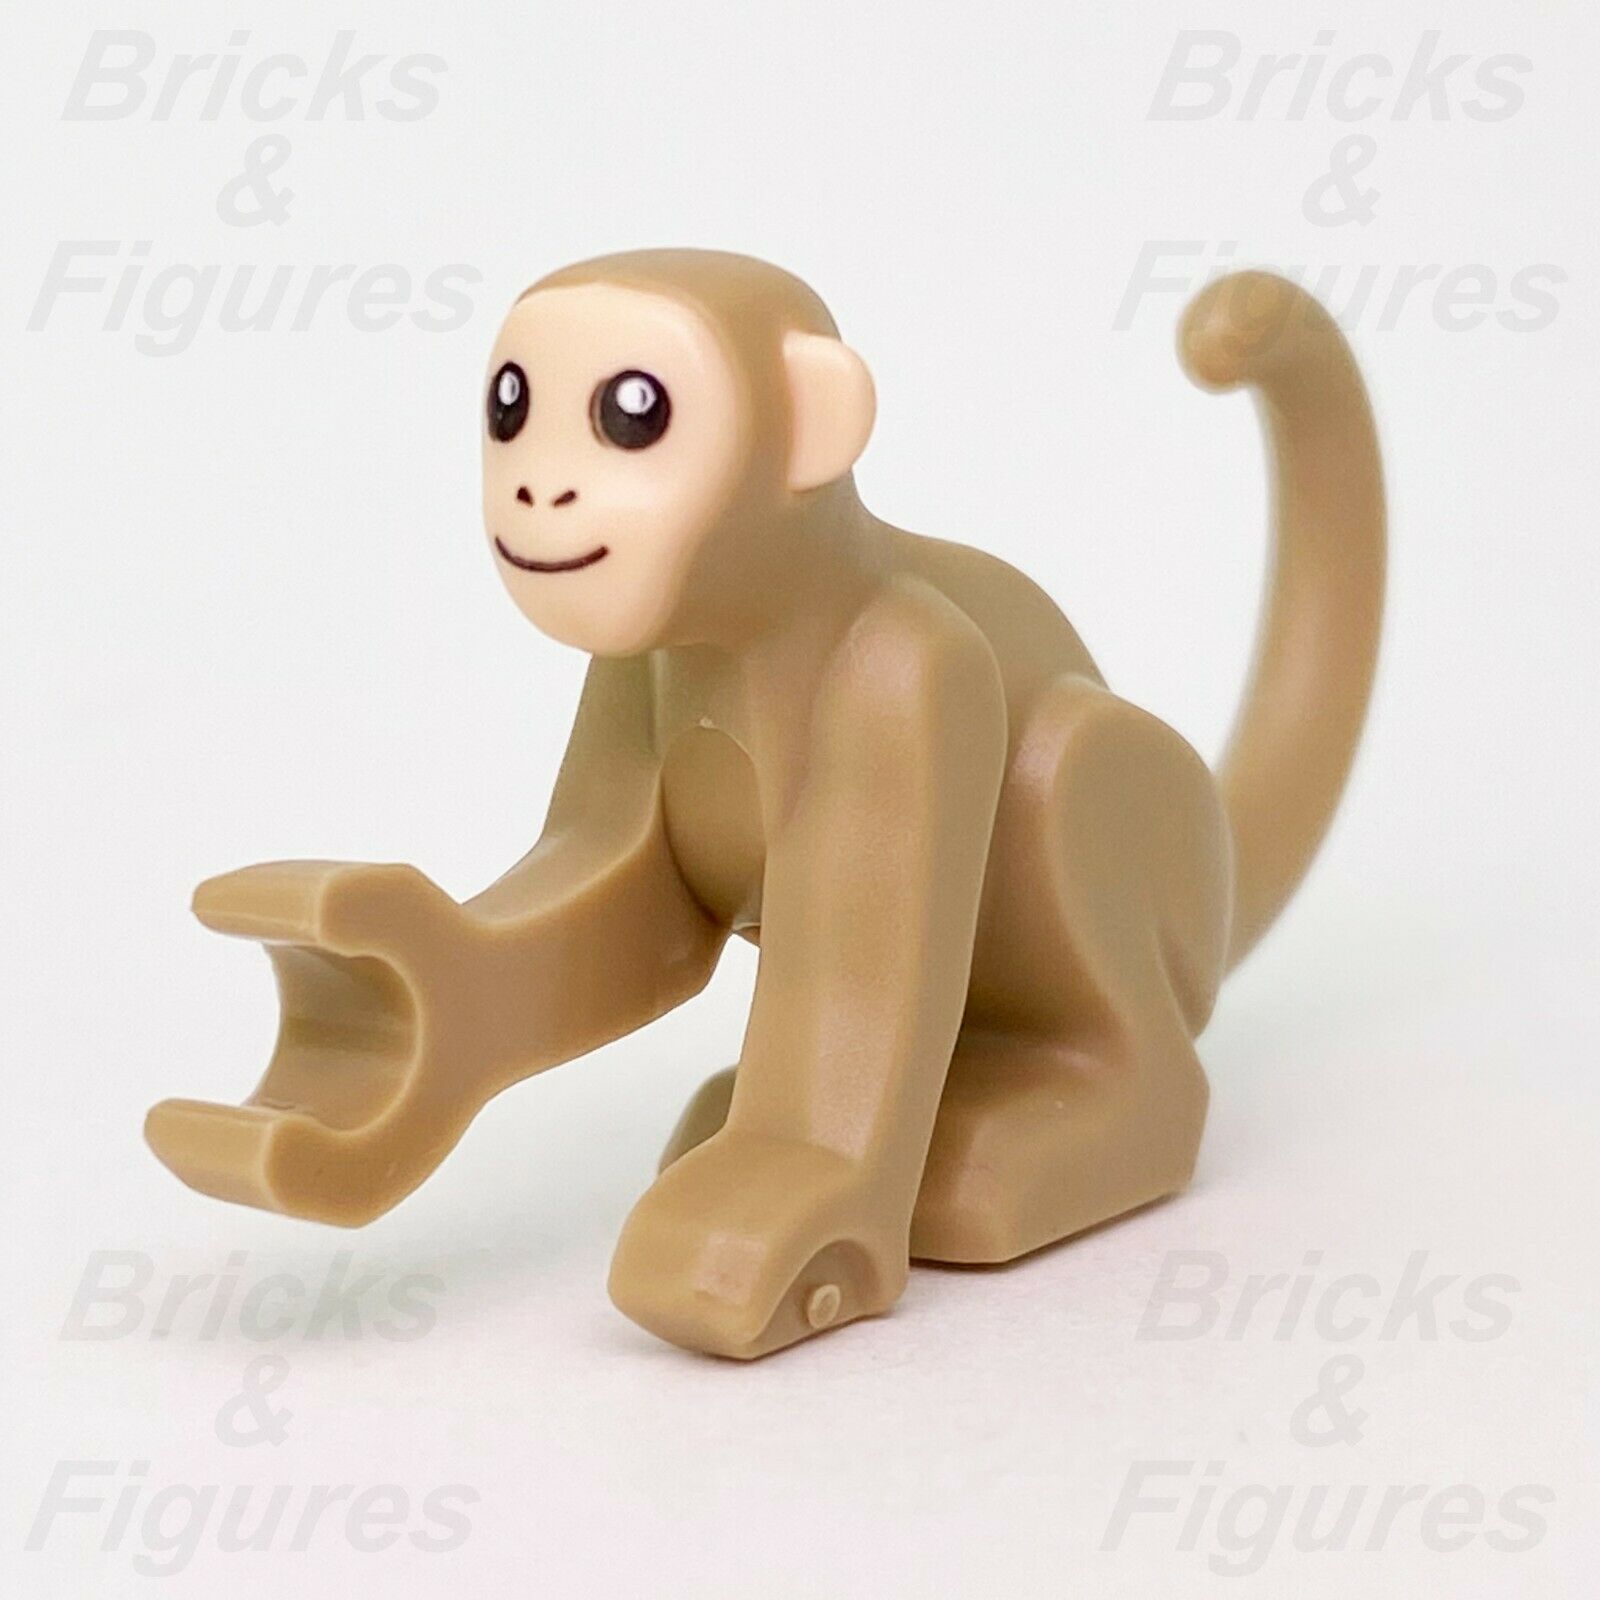 New LEGO Town City Monkey Wildlife Rescue Animal Minifigure Part 60300 60302 - Bricks & Figures